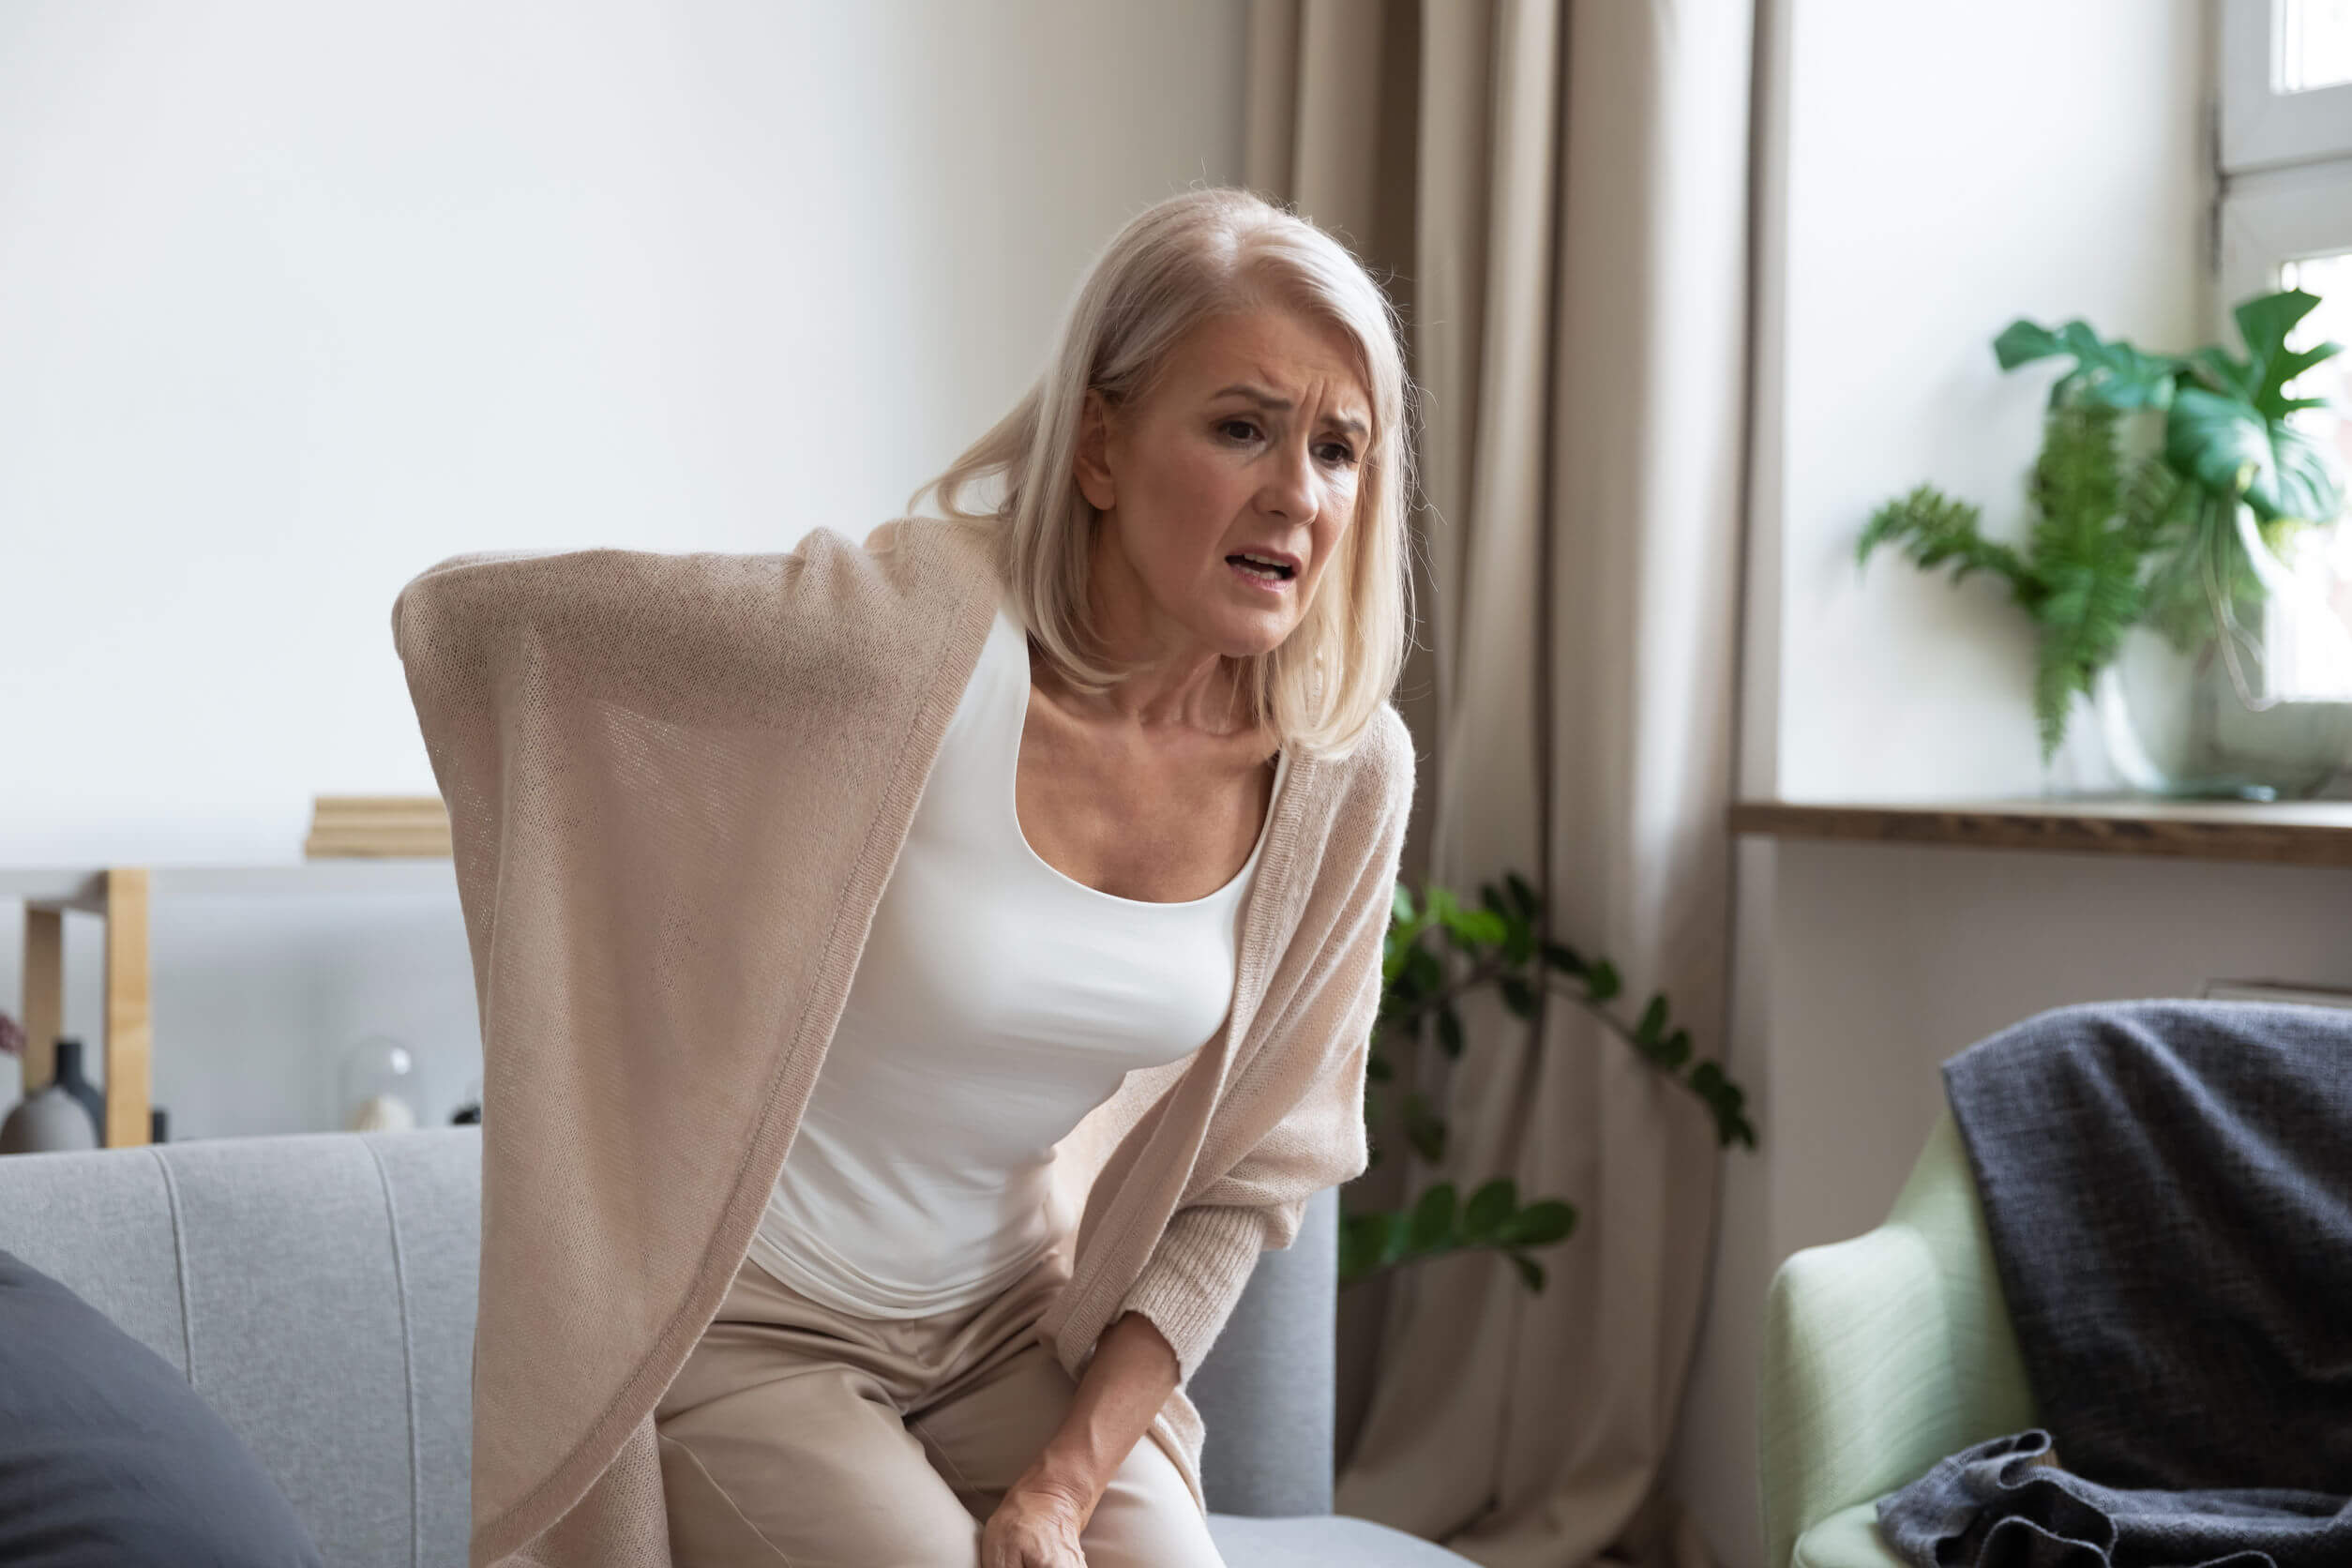 As causas e fatores de risco da menopausa são específicos